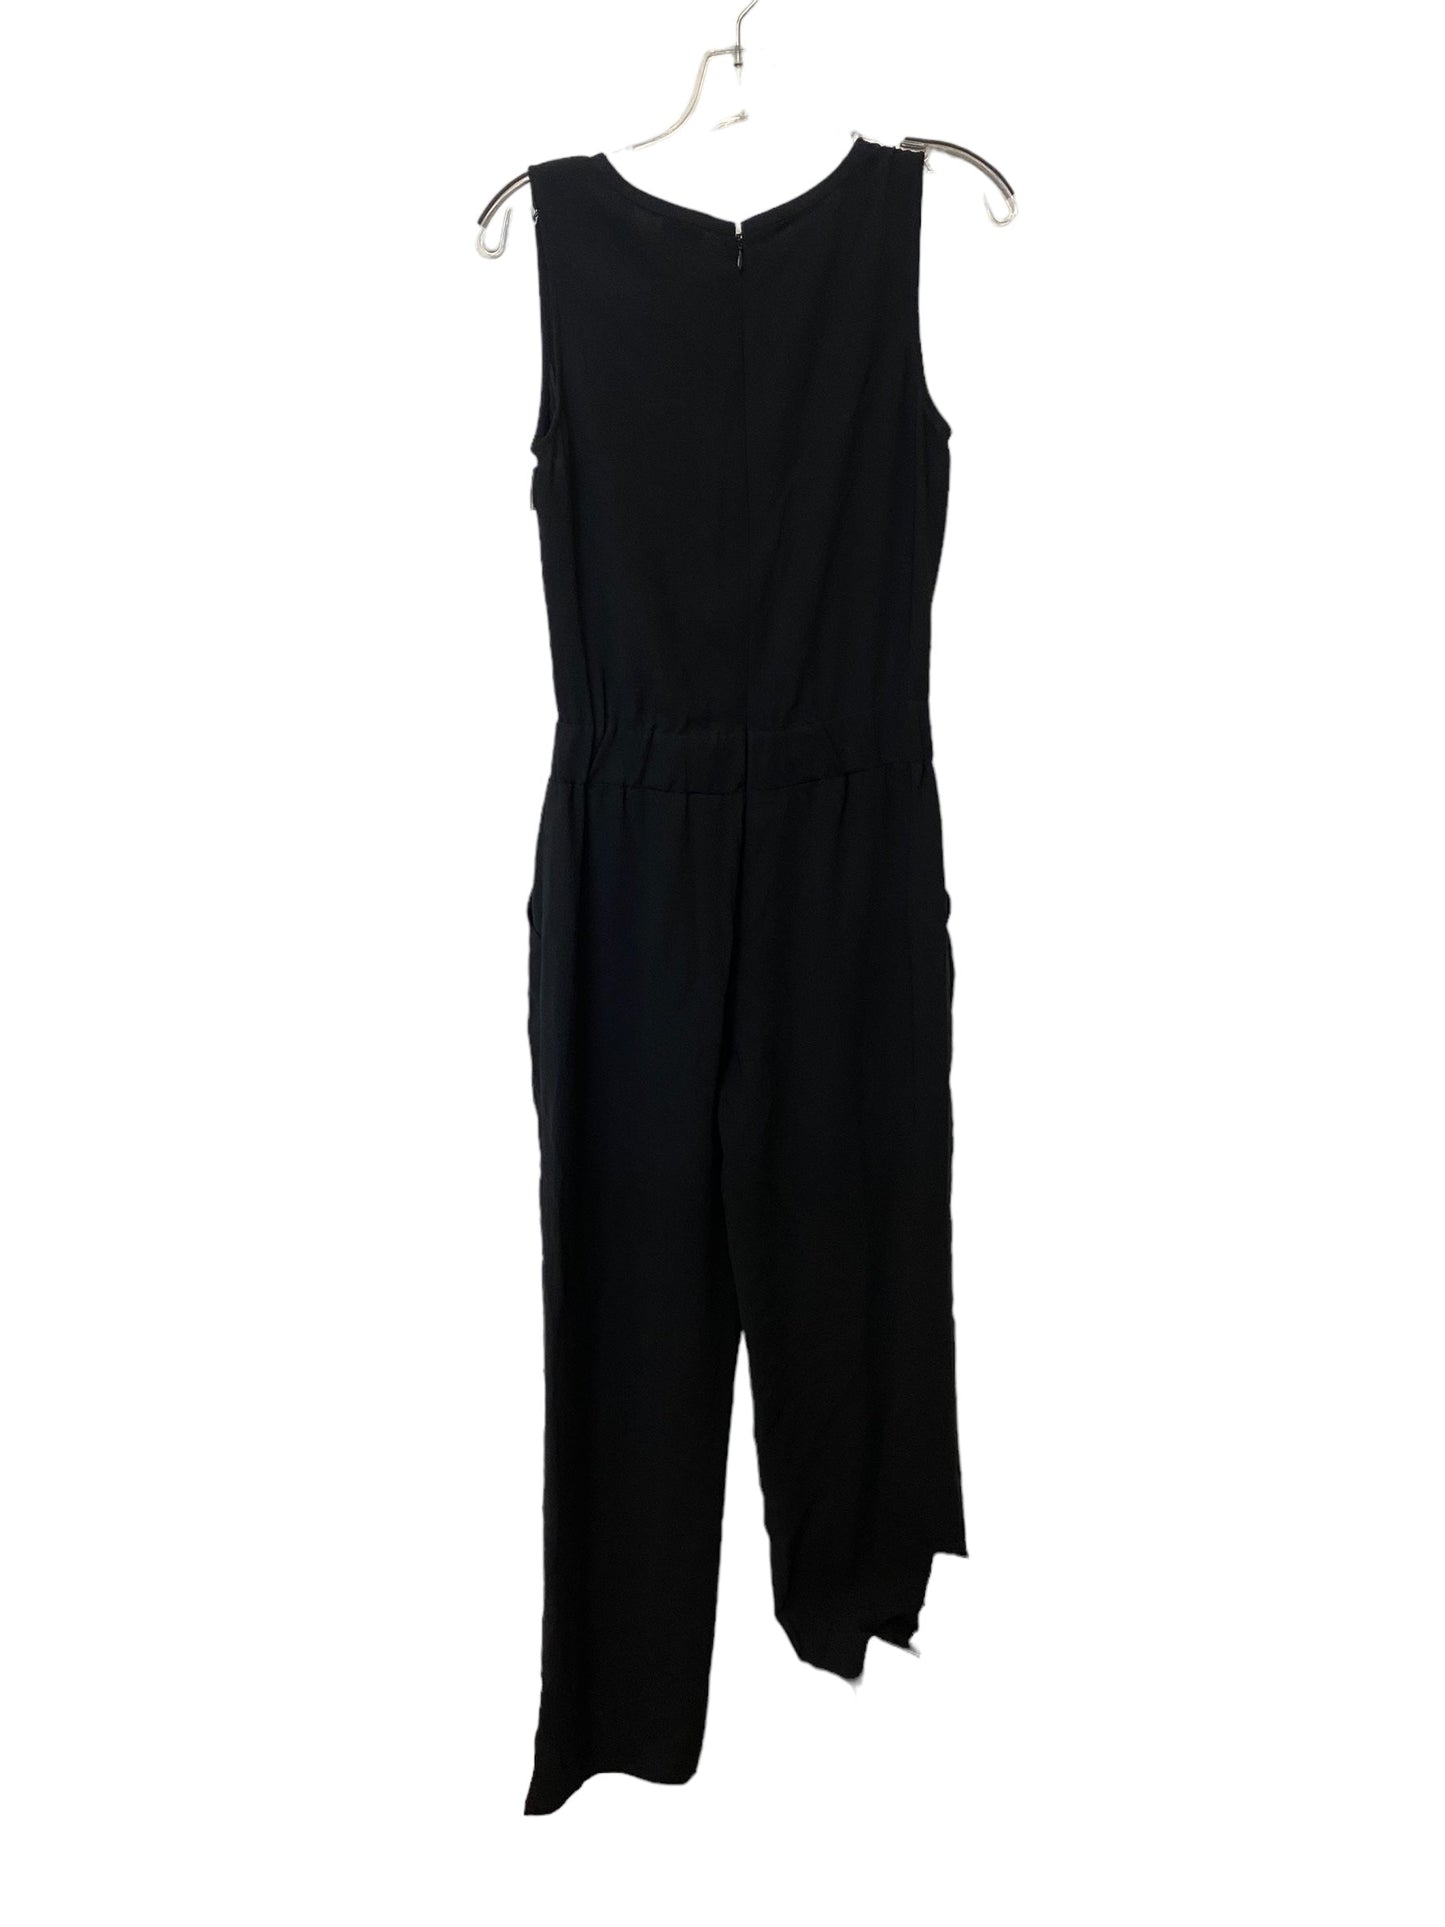 Black Jumpsuit Cabi, Size 4